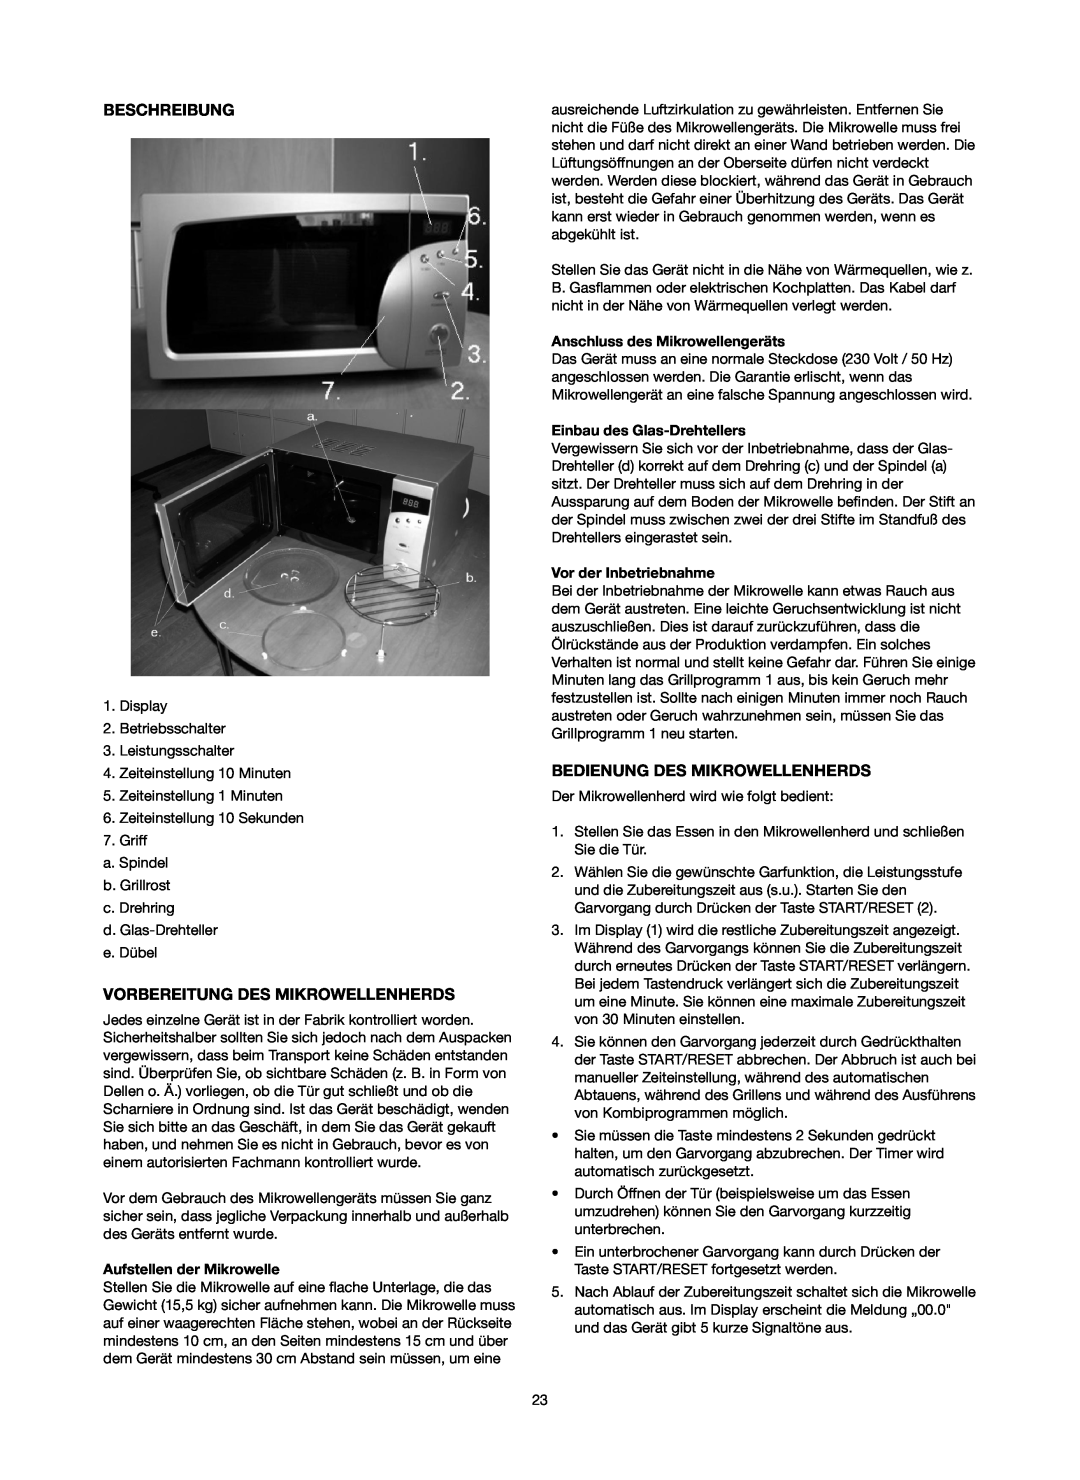 Melissa 753-084 Beschreibung, Vorbereitung Des Mikrowellenherds, Bedienung Des Mikrowellenherds, Aufstellen der Mikrowelle 